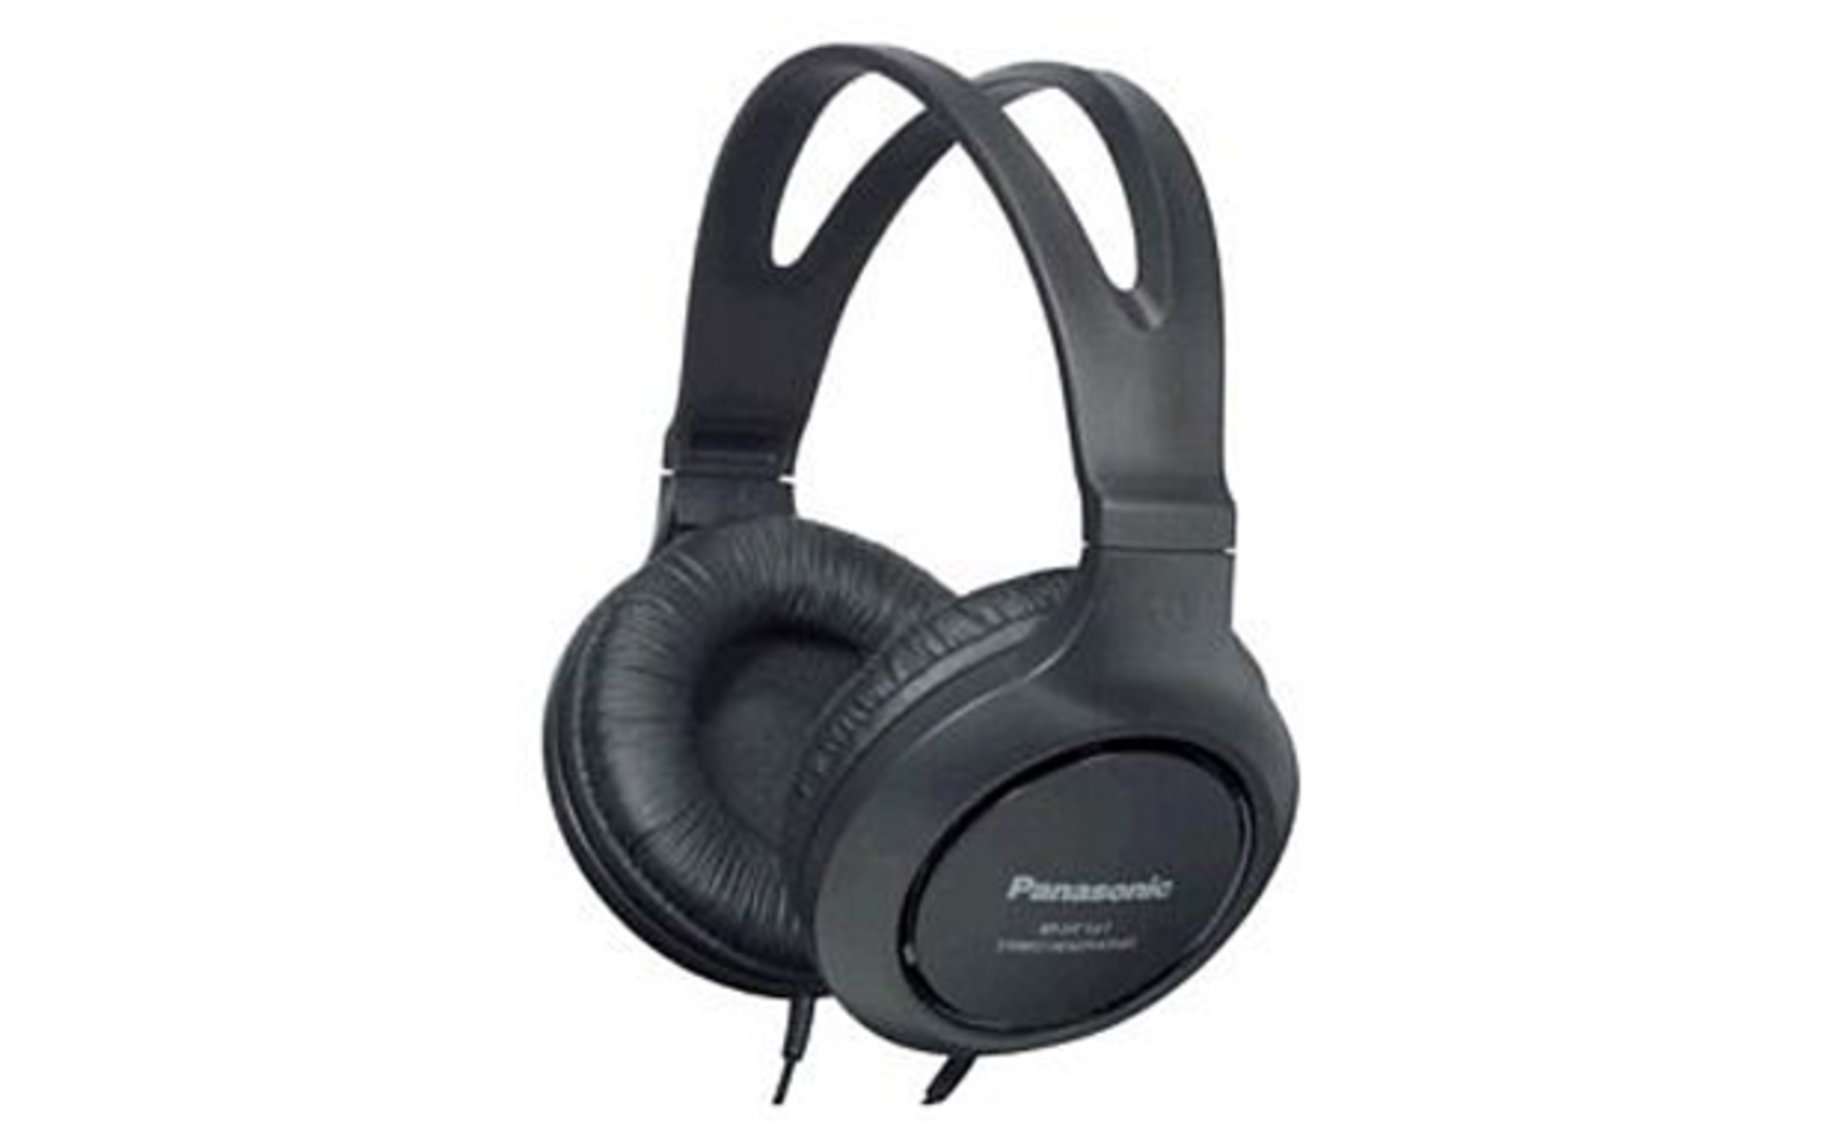 Panasonic RP-HT161E-K slušalice